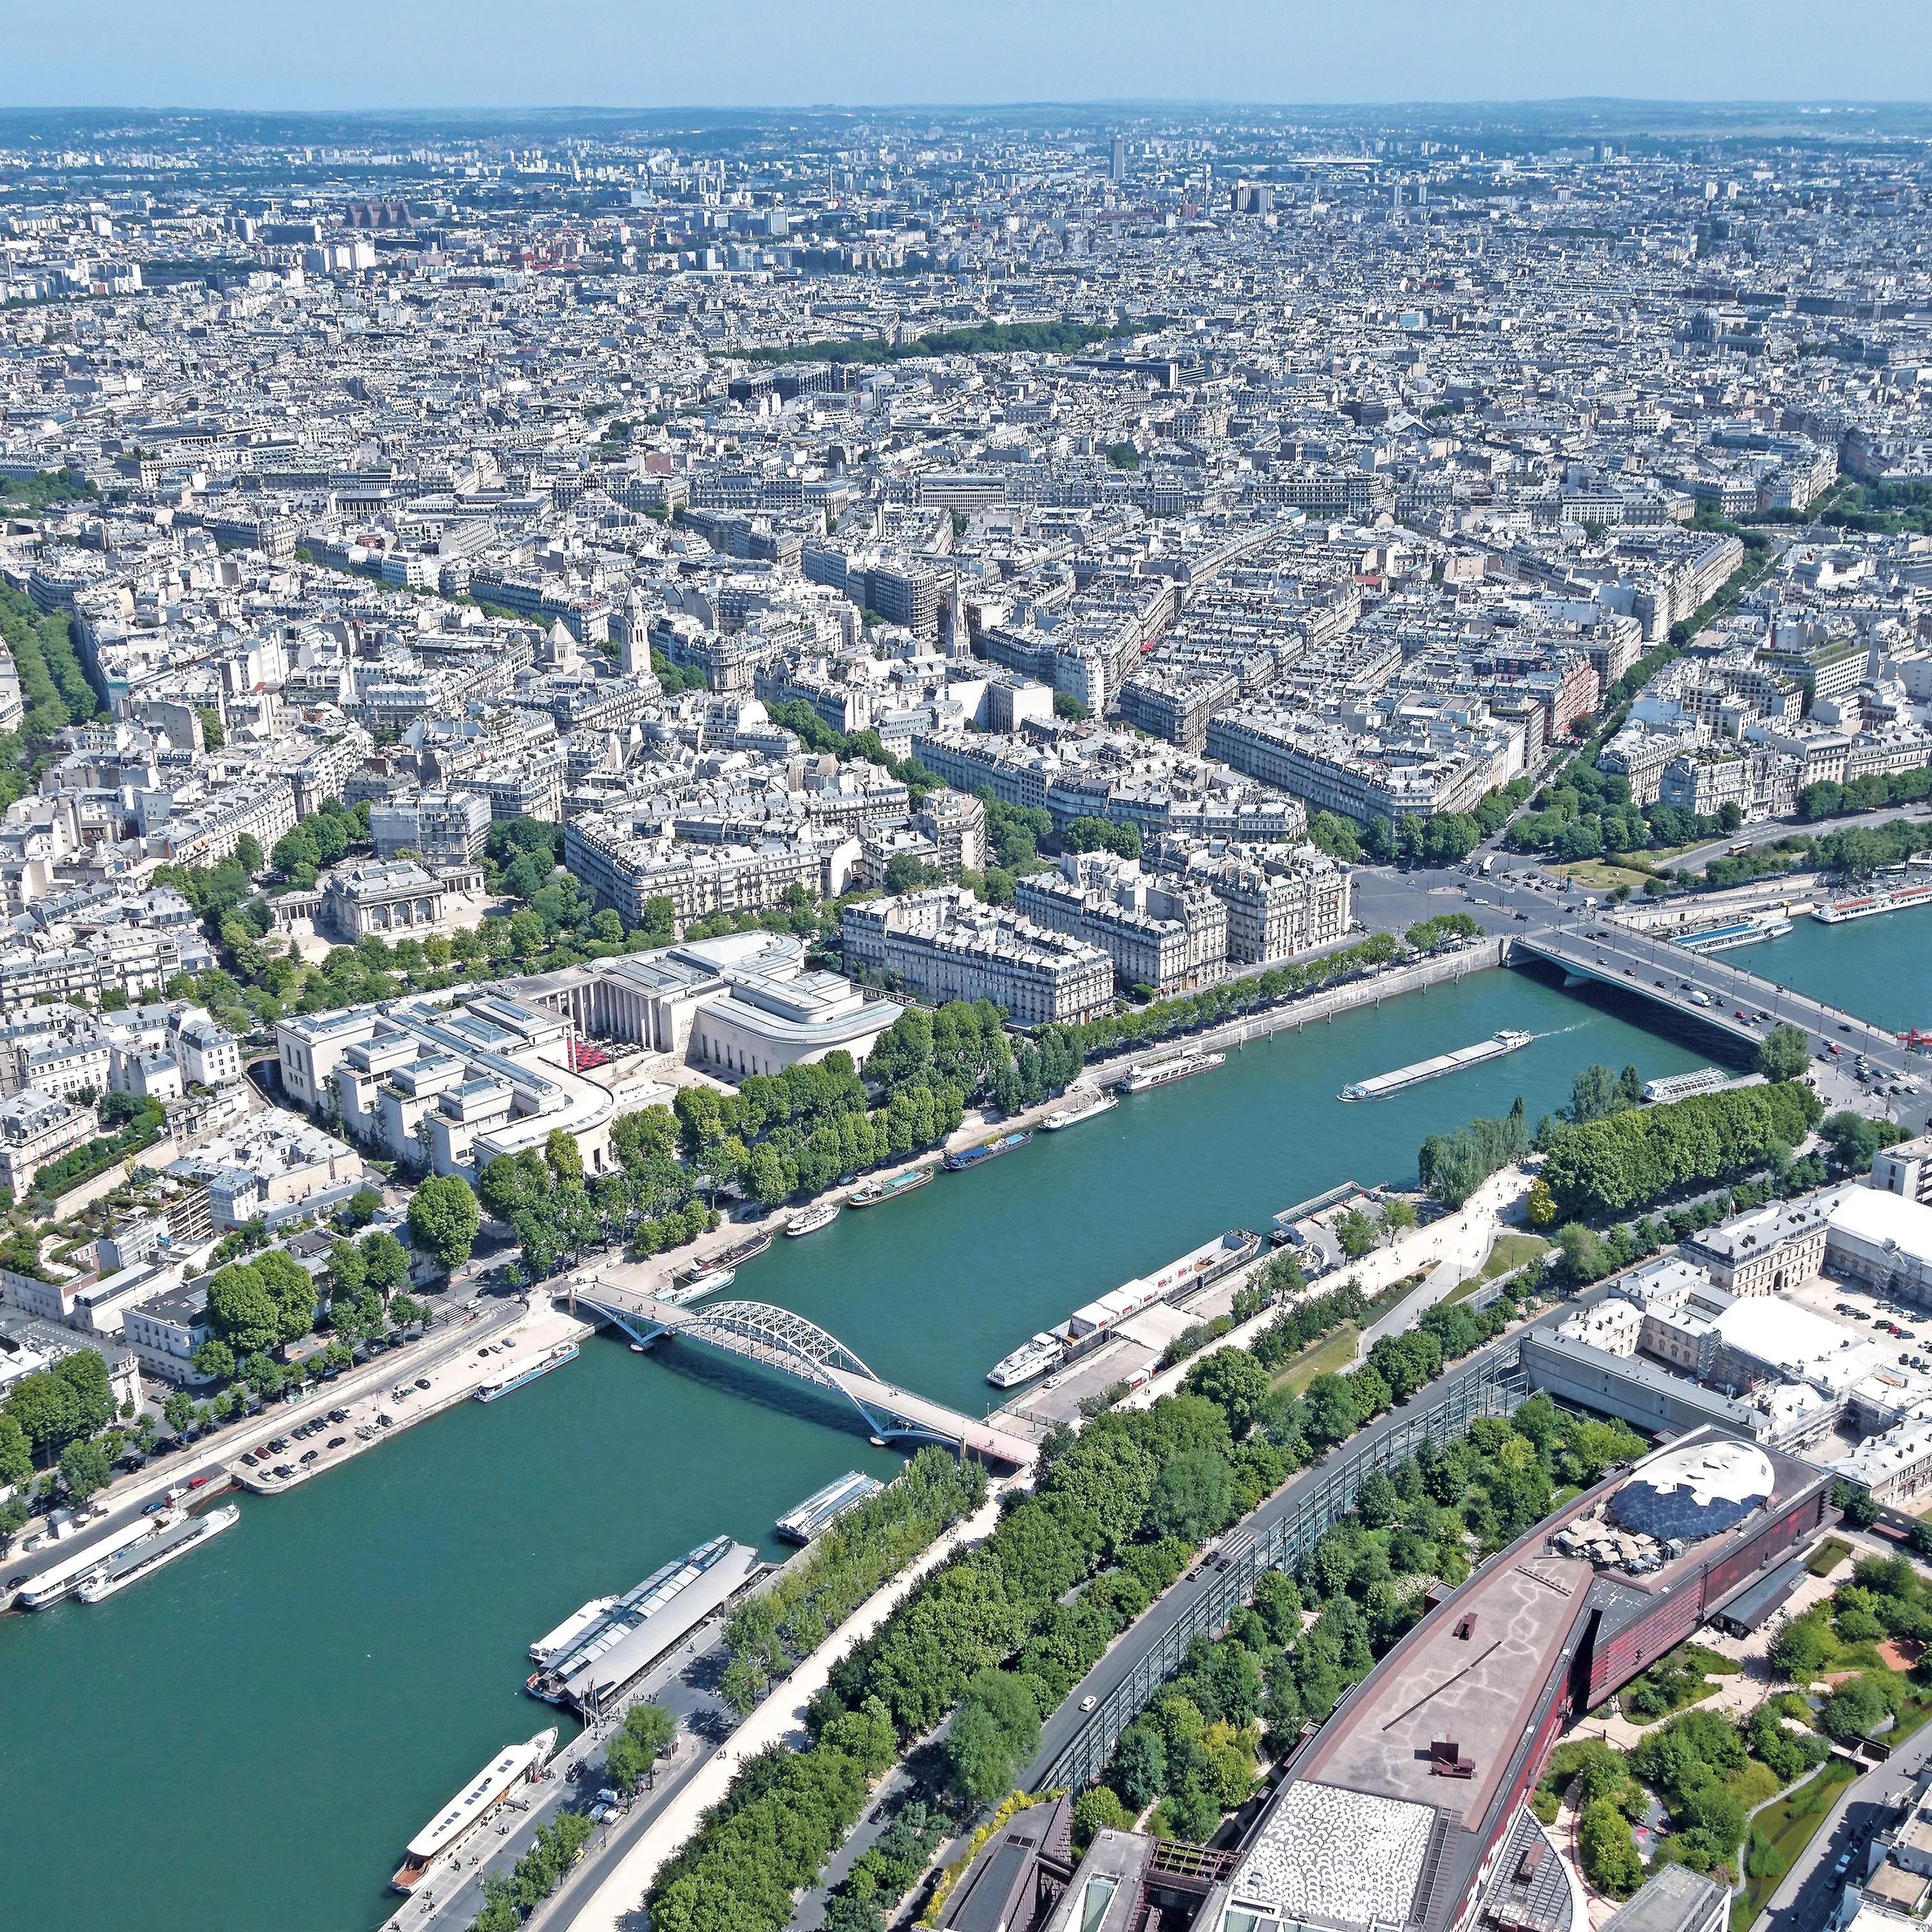  L'urbanisation autour de la Seine.